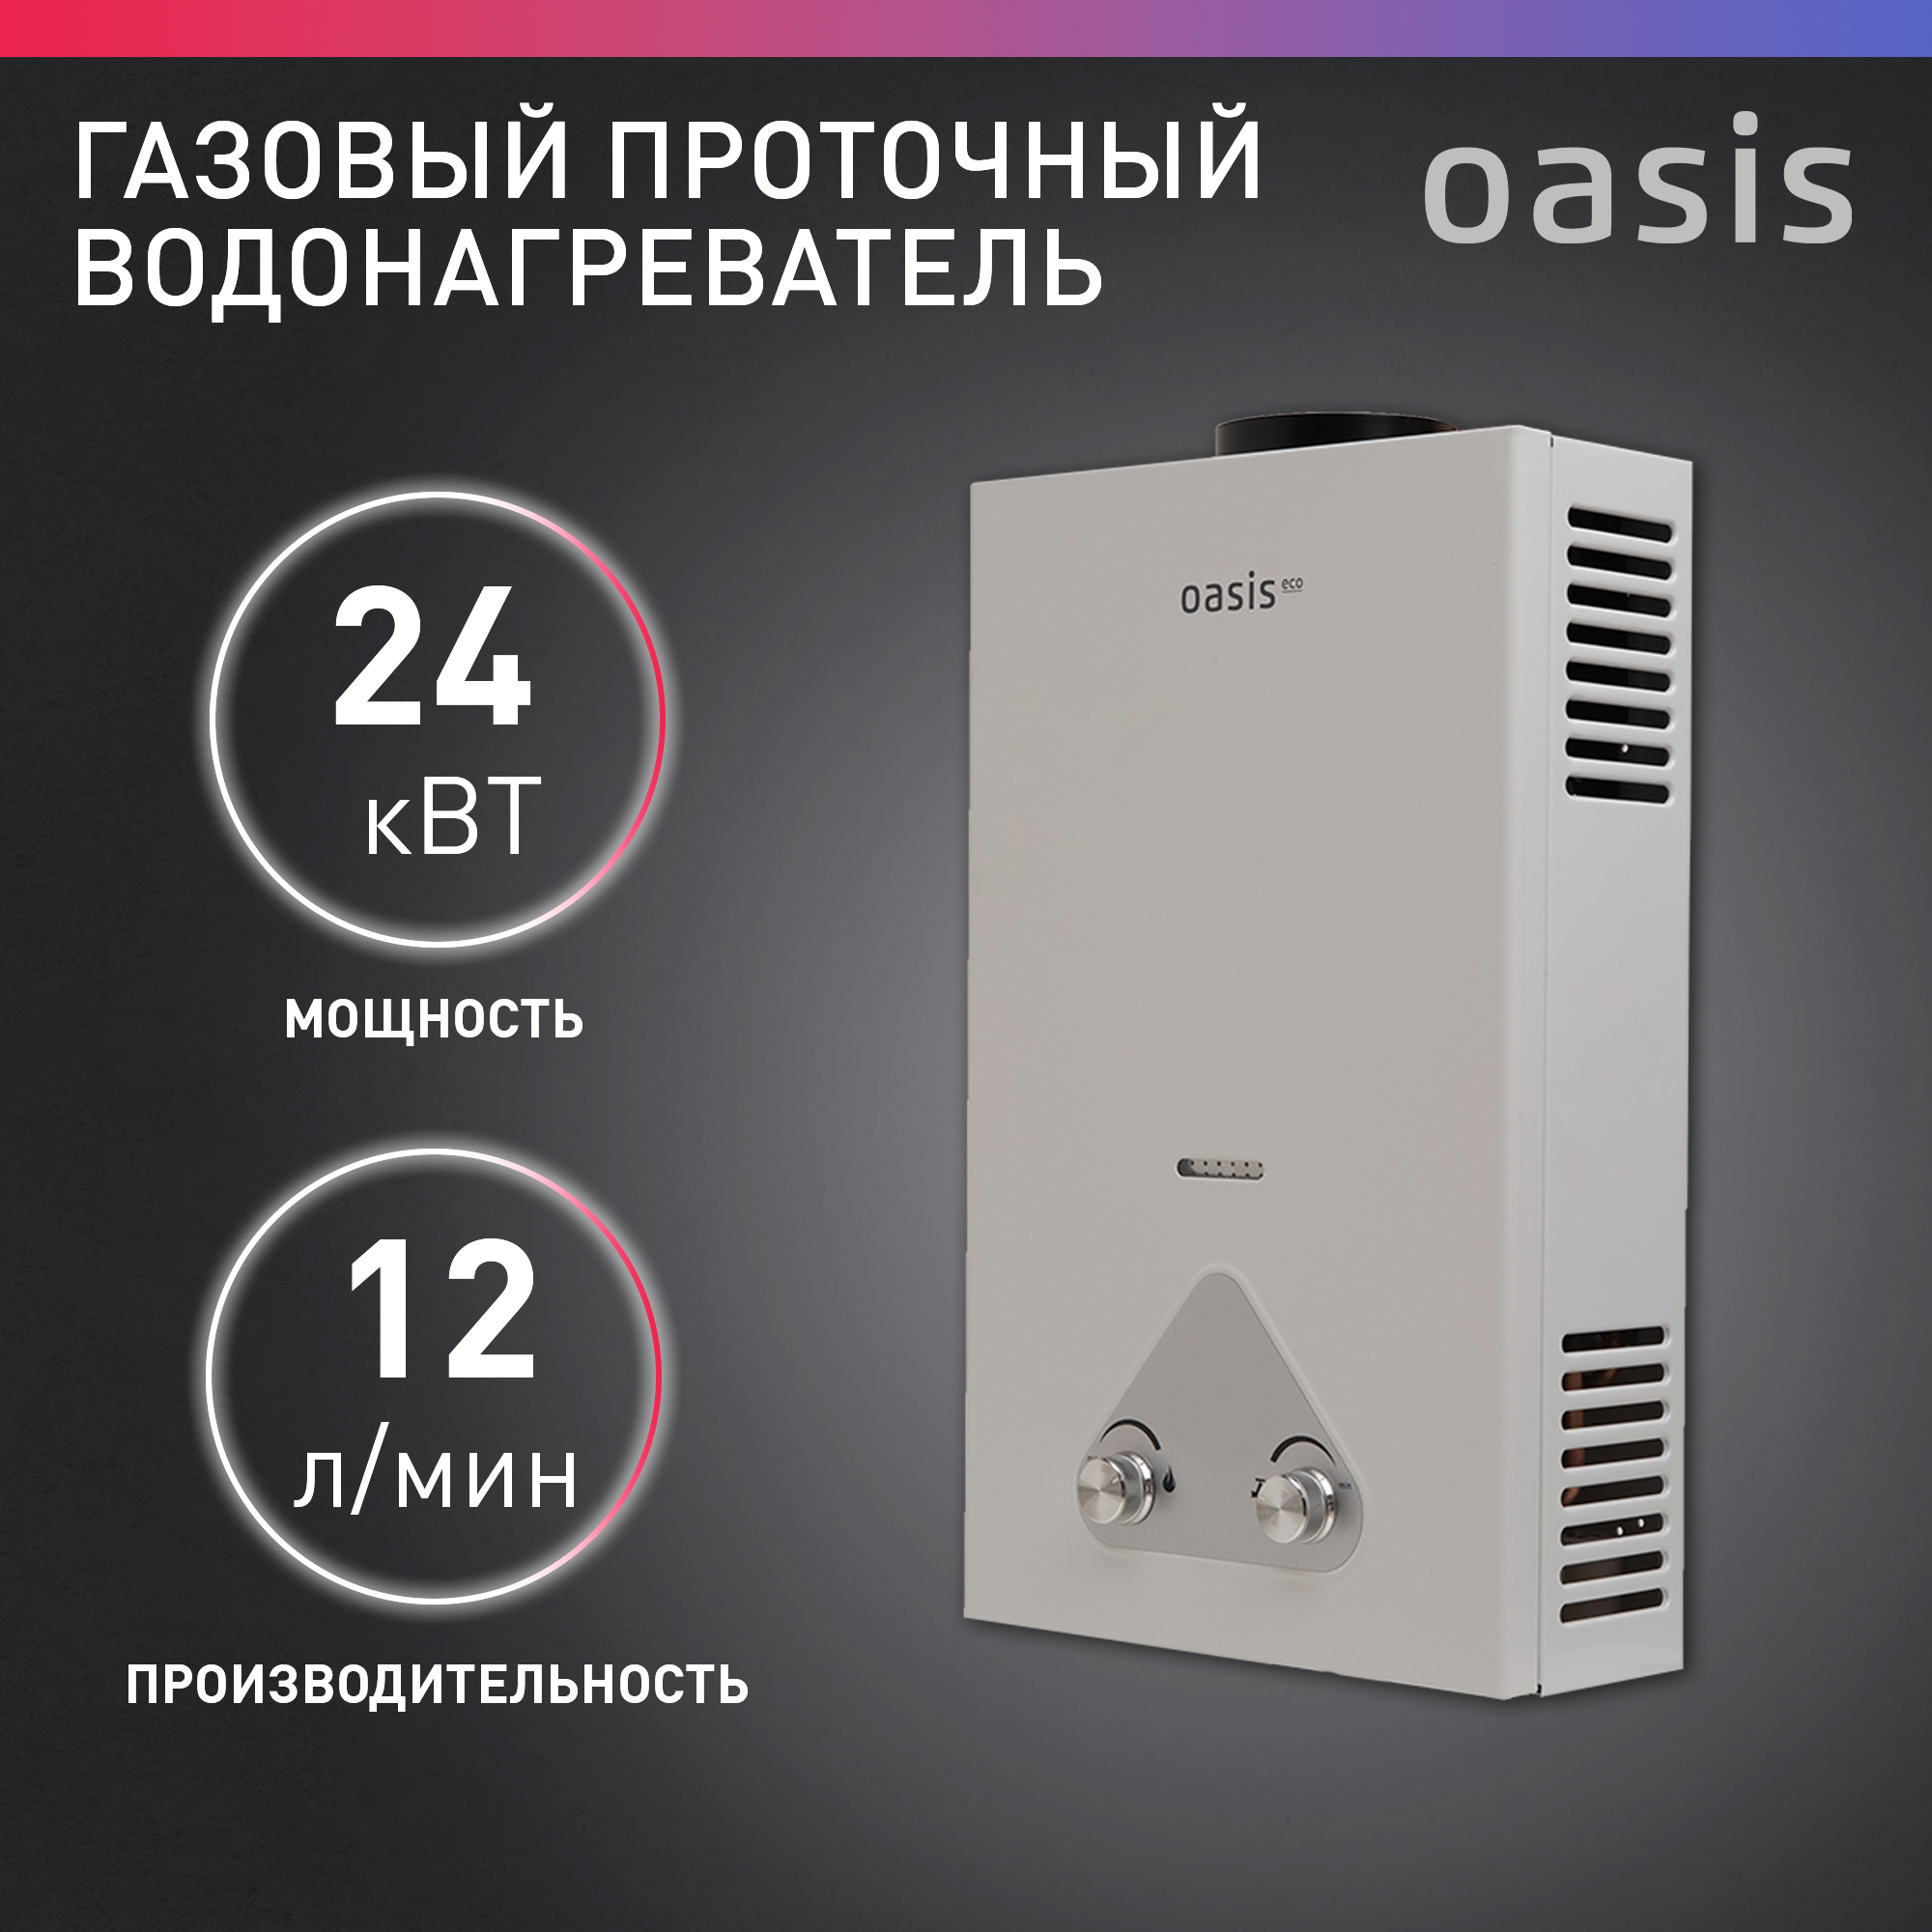 Газовый проточный водонагреватель (колонка) Oasis Eco W-24 кВт